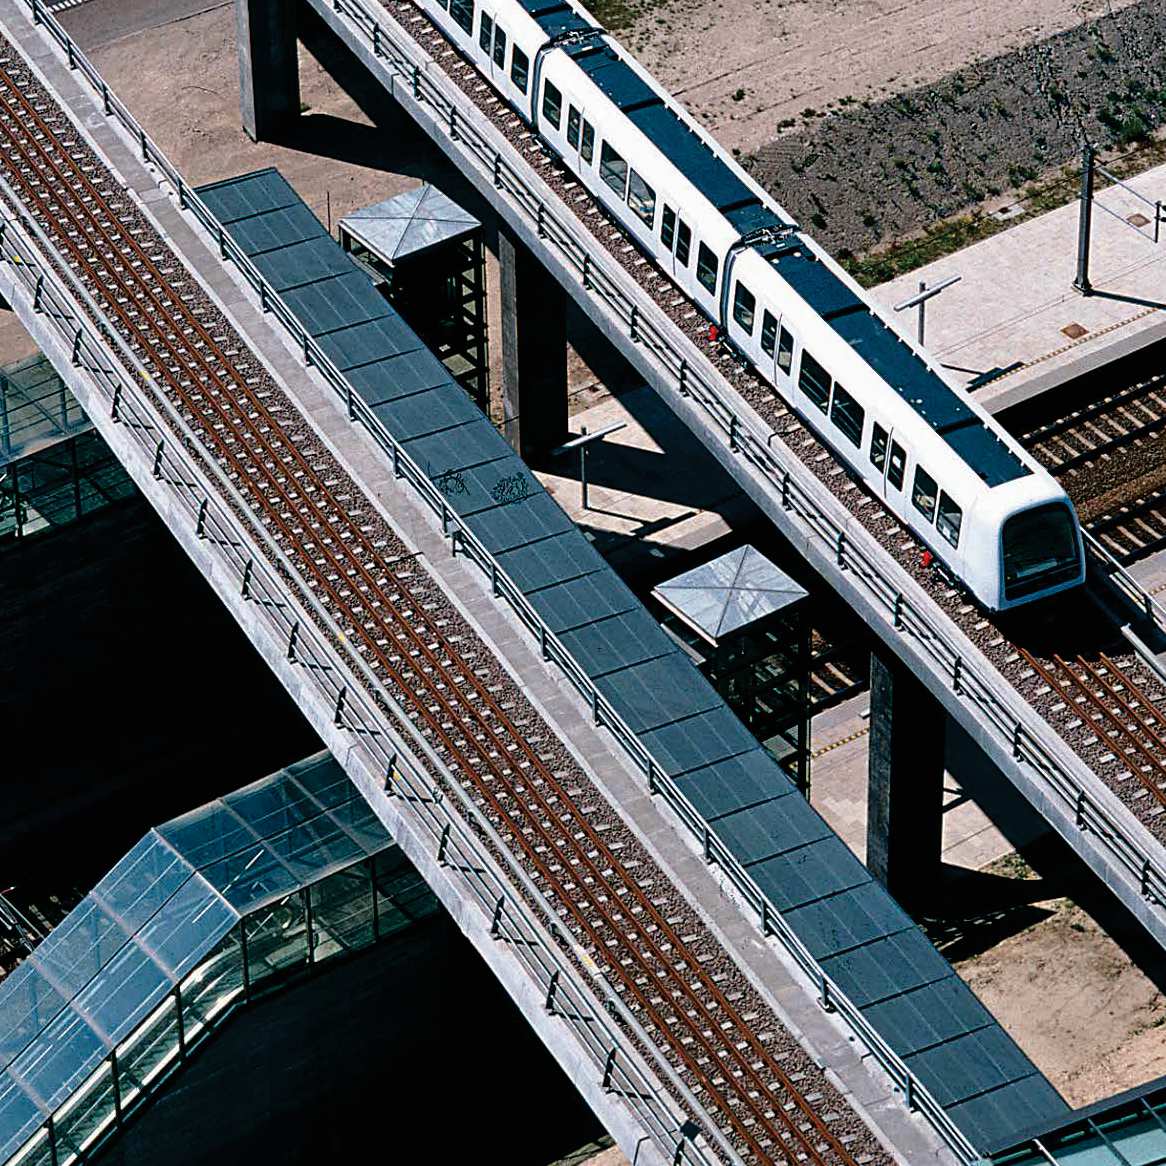 e`g [f b c e`da a \\`Z Z_\]^]\[ZY La nuova linea di metropolitana di Copenhagen, denominata Cityringen, entrerà in funzione nel 2018 e sarà costituita da convogli driverless altamente tecnologici che